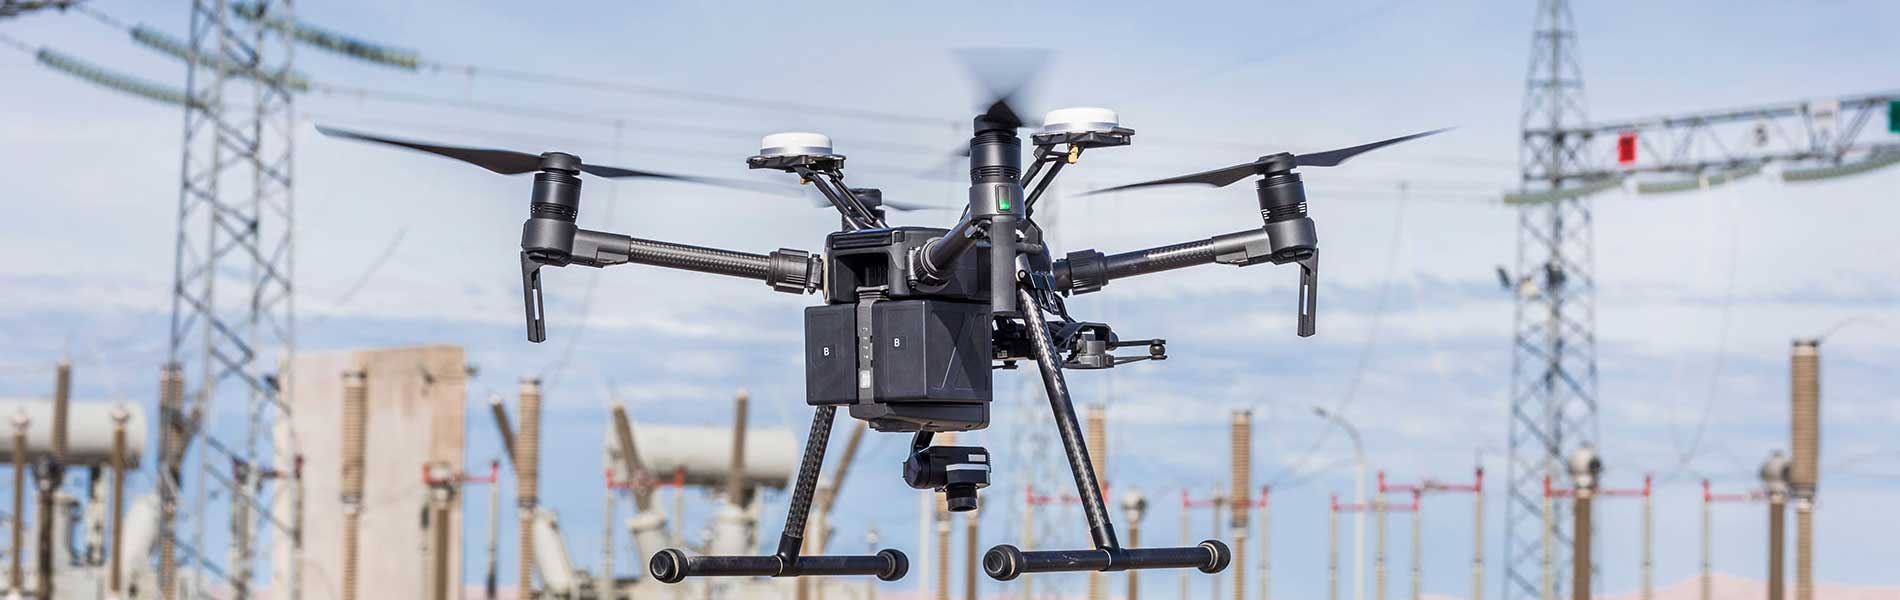 Pilote drone professionnel La Ciotat (13600)